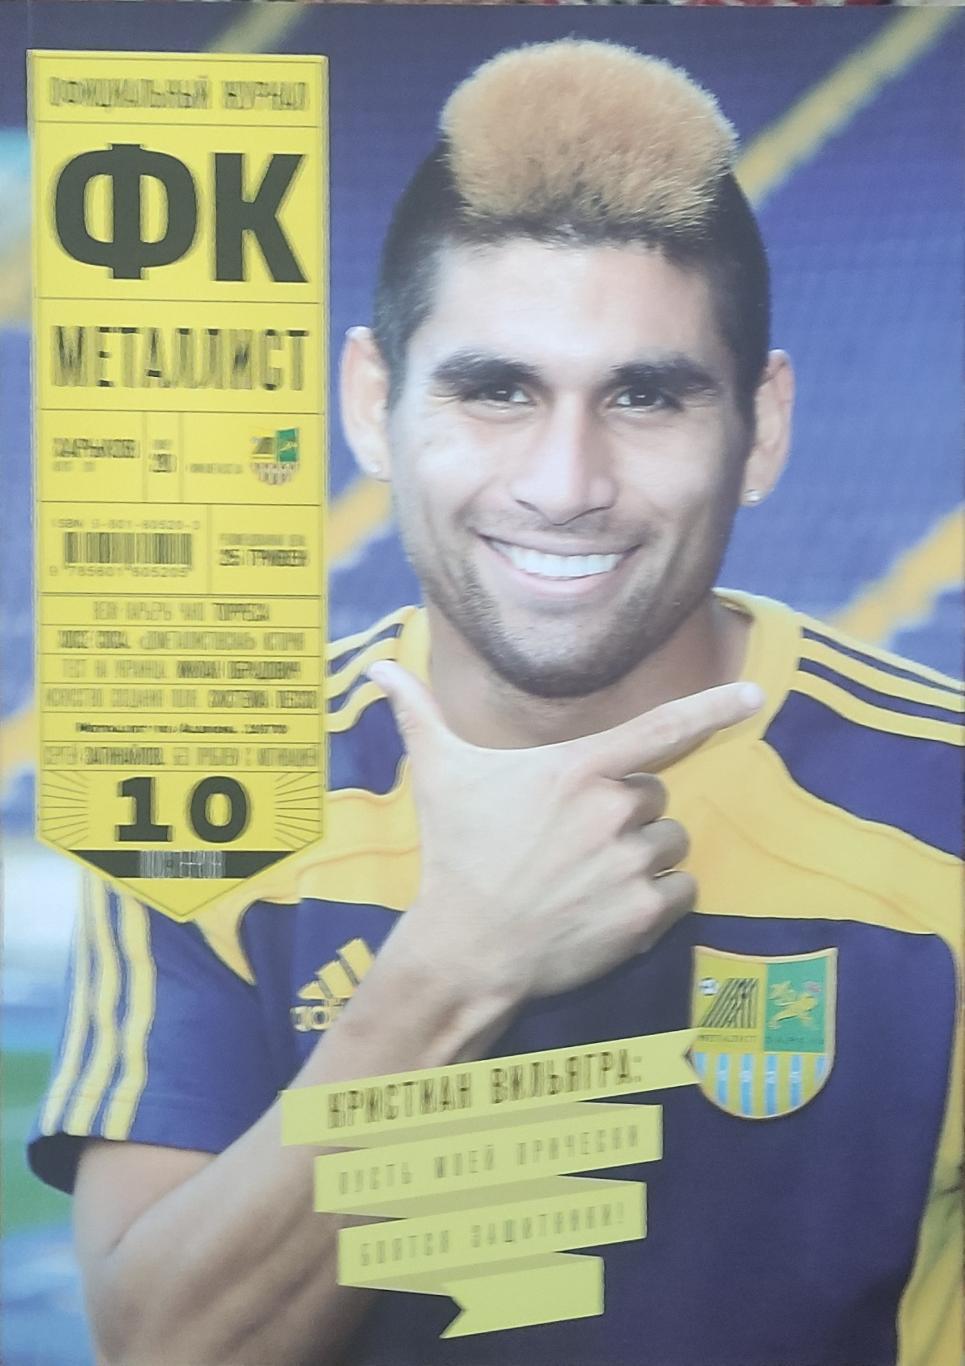 Официальный Журнал ФК Металлист.N20.Август 2011.